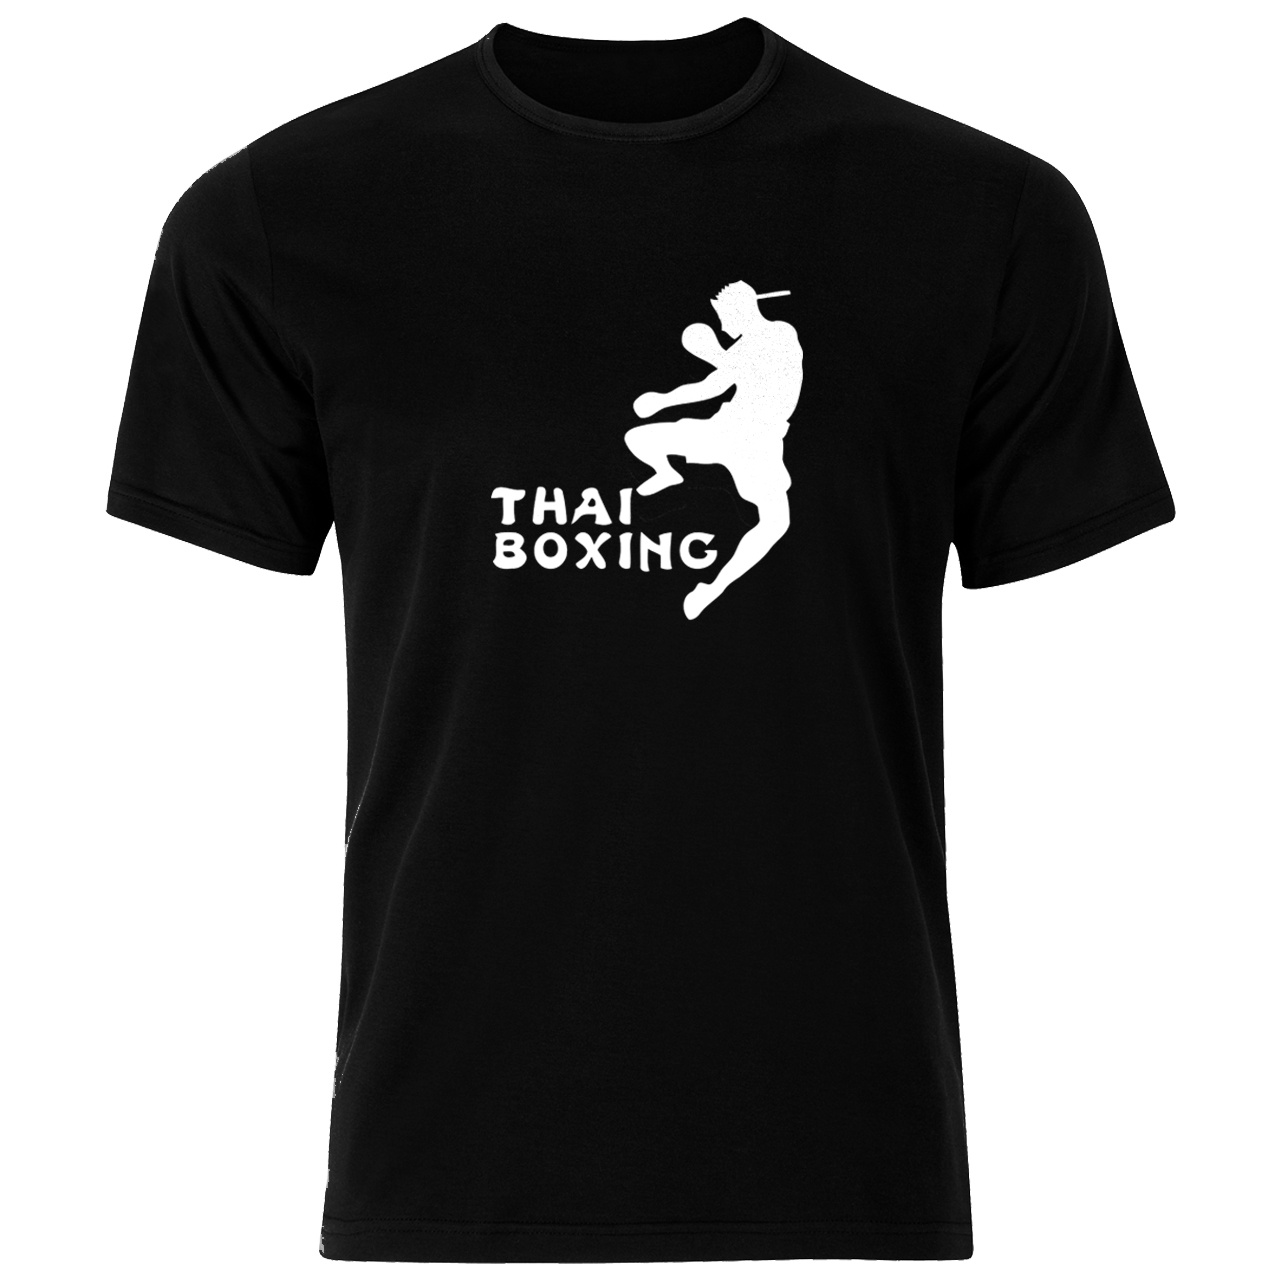 تی شرت ورزشی نخی مردانه فلوریزا  طرح موی تای بوکس کد thai boxing 001M تیشرت